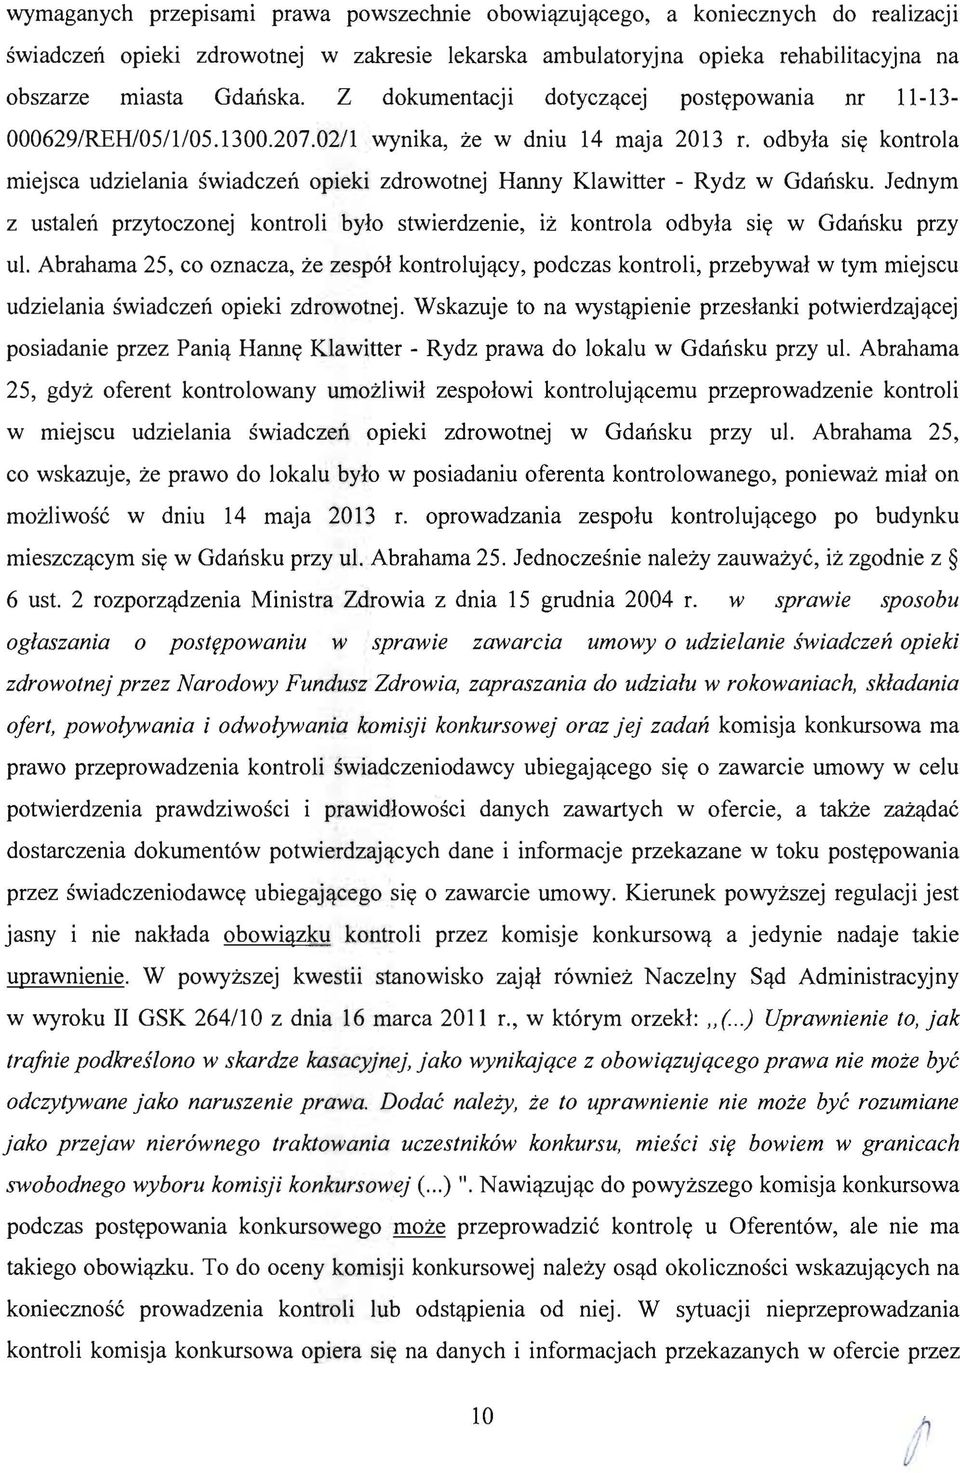 02/1 wynika, ze w dniu 14 maja 2013 L odbyla Sly kontrola miejsca udzielania swiadczen opieki zdrowotnej Hanny Klawitter - Rydz w Gdansku.